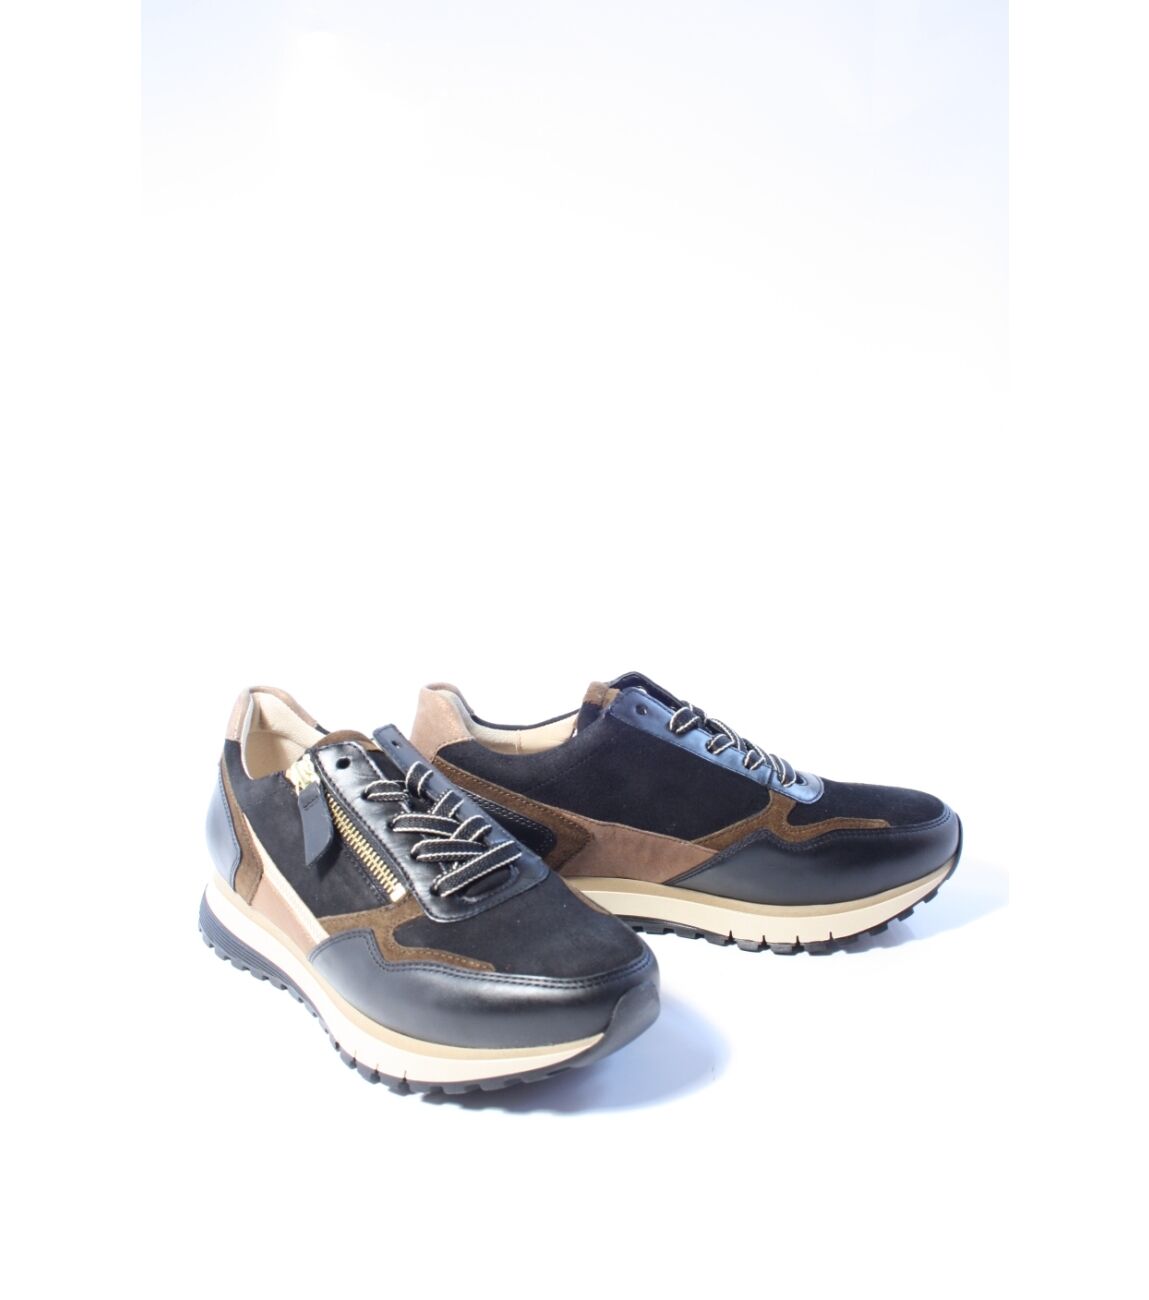 Gabor Dames Sneakers - zwart combi art - 56.378 67 maat 5.5/38.5